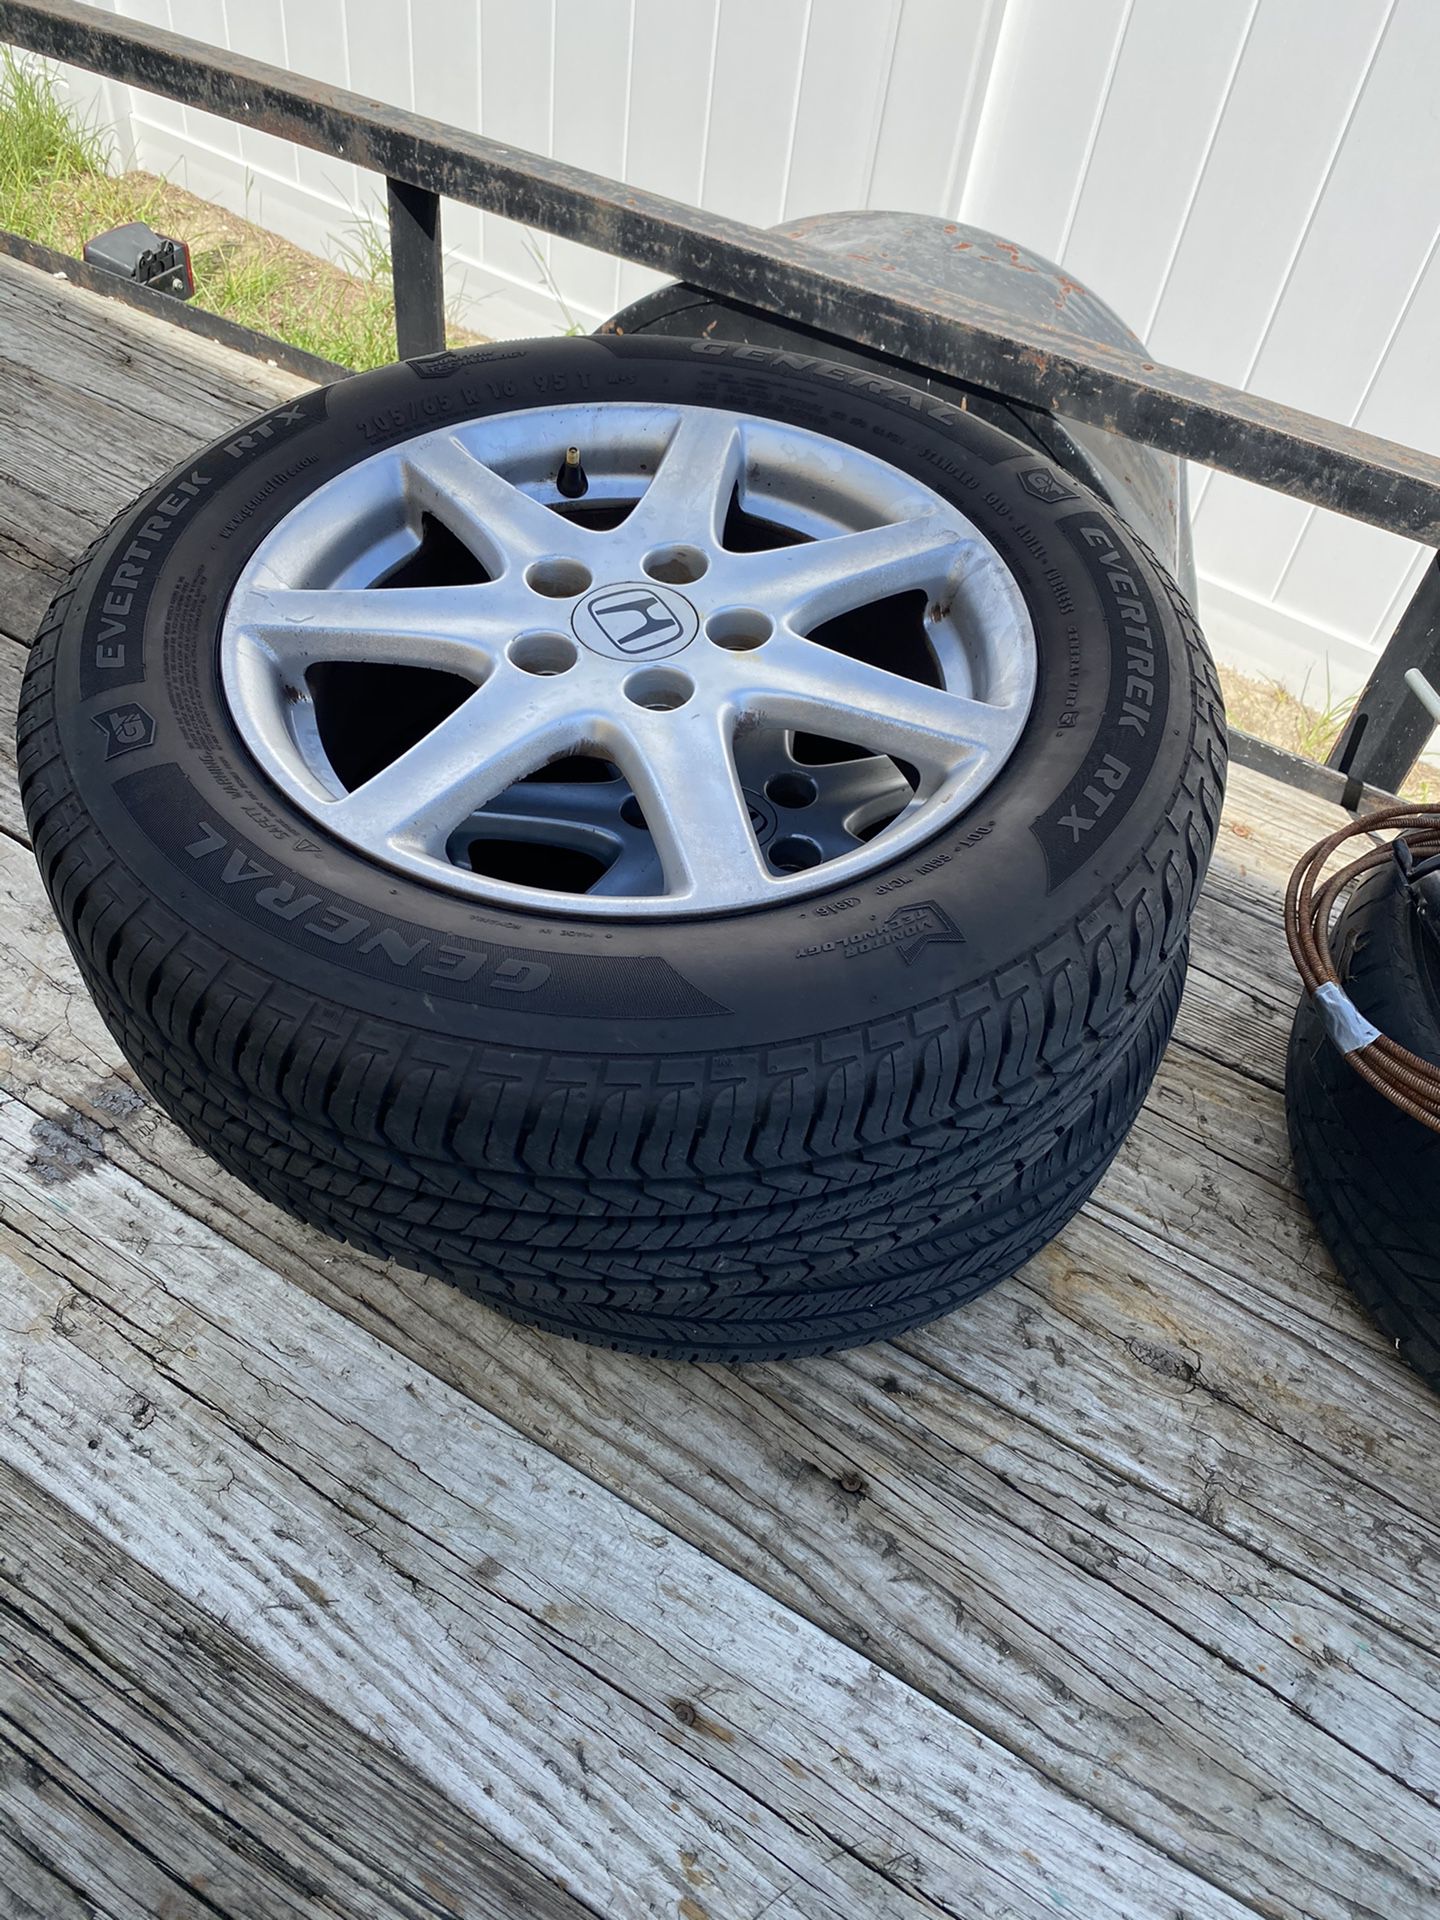 Honda Accord wheels and tires